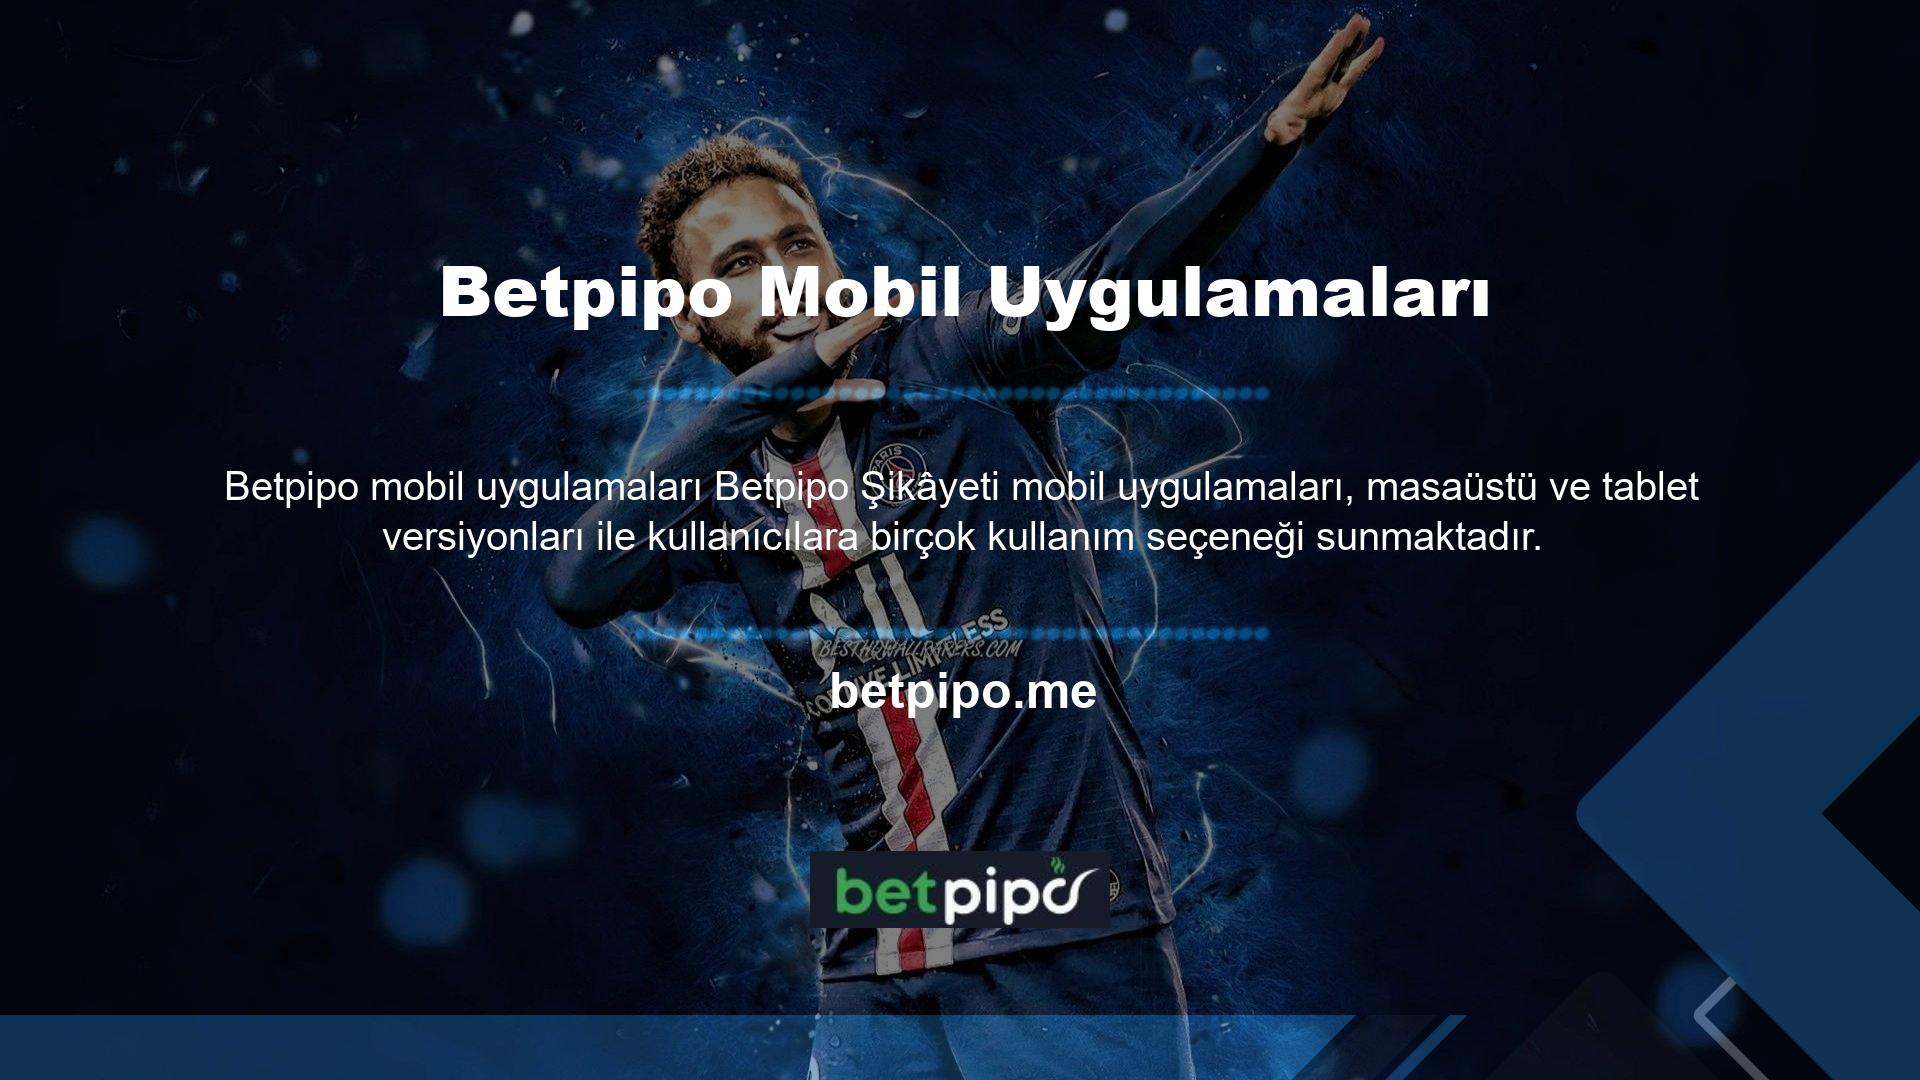 Betpipo çeşitli oyun seçenekleri, güvenilir ve eğlenceli ortamıyla hizmet vermektedir